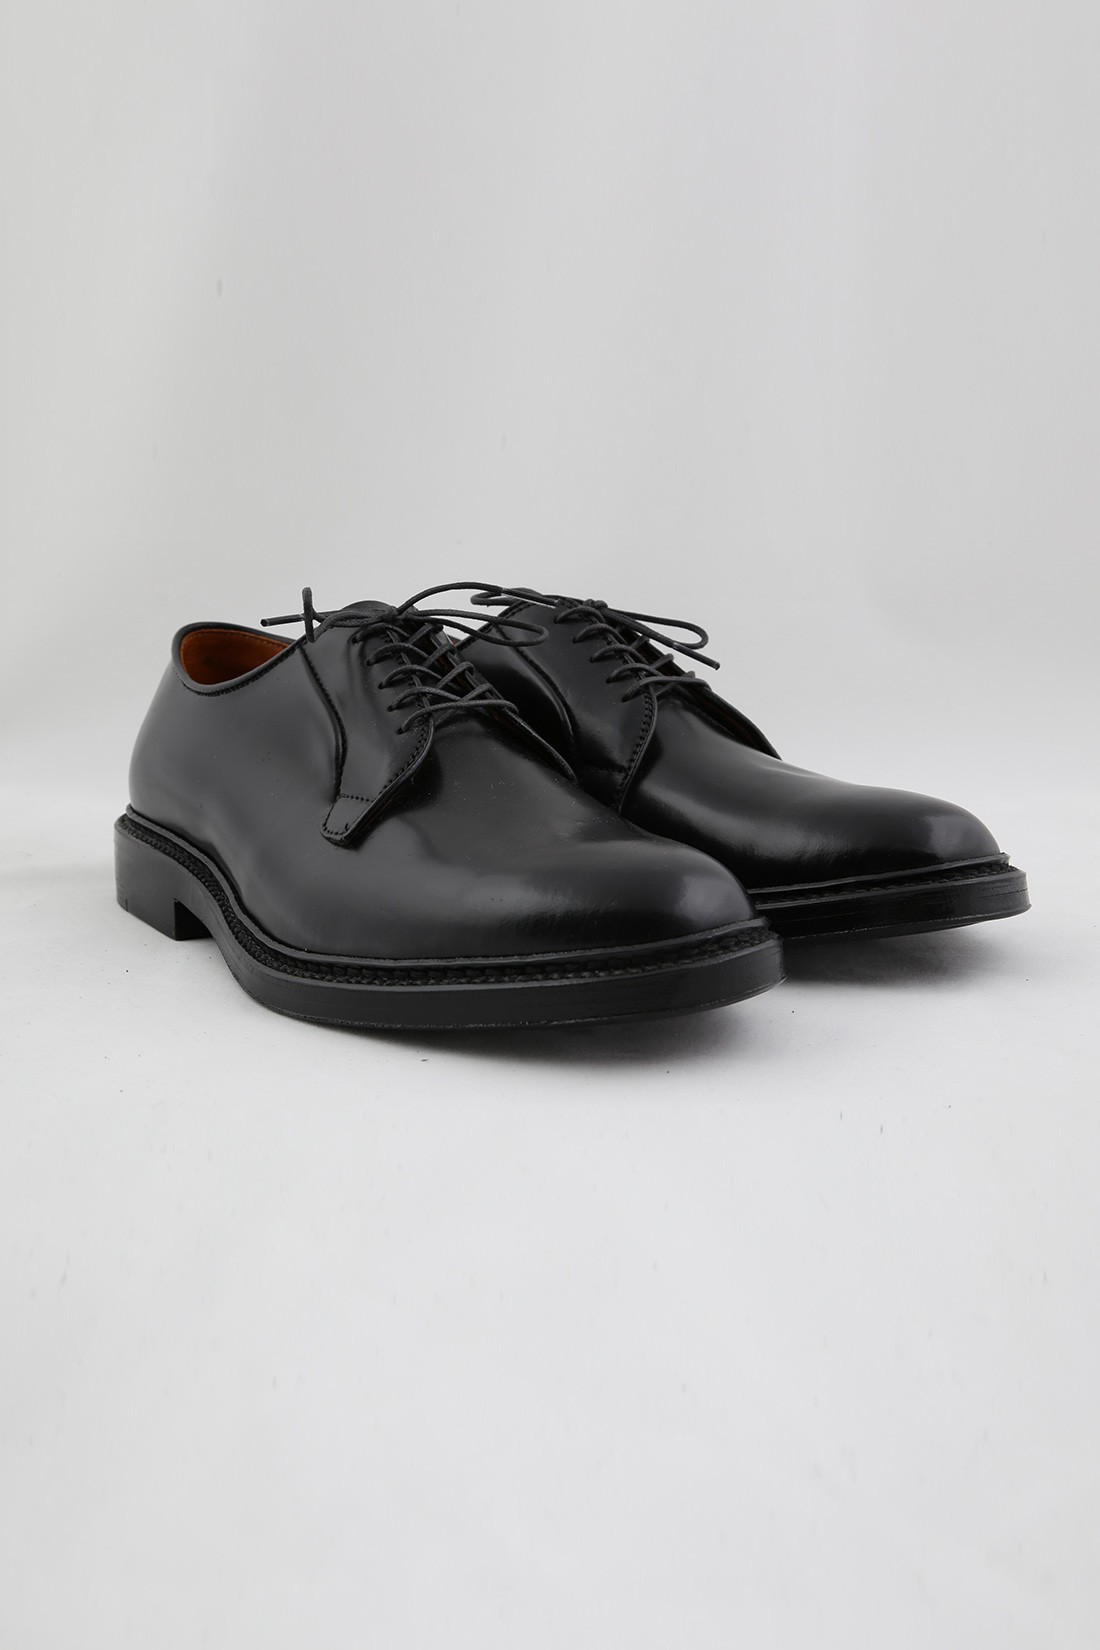 Graduate Richelieu - Shoes